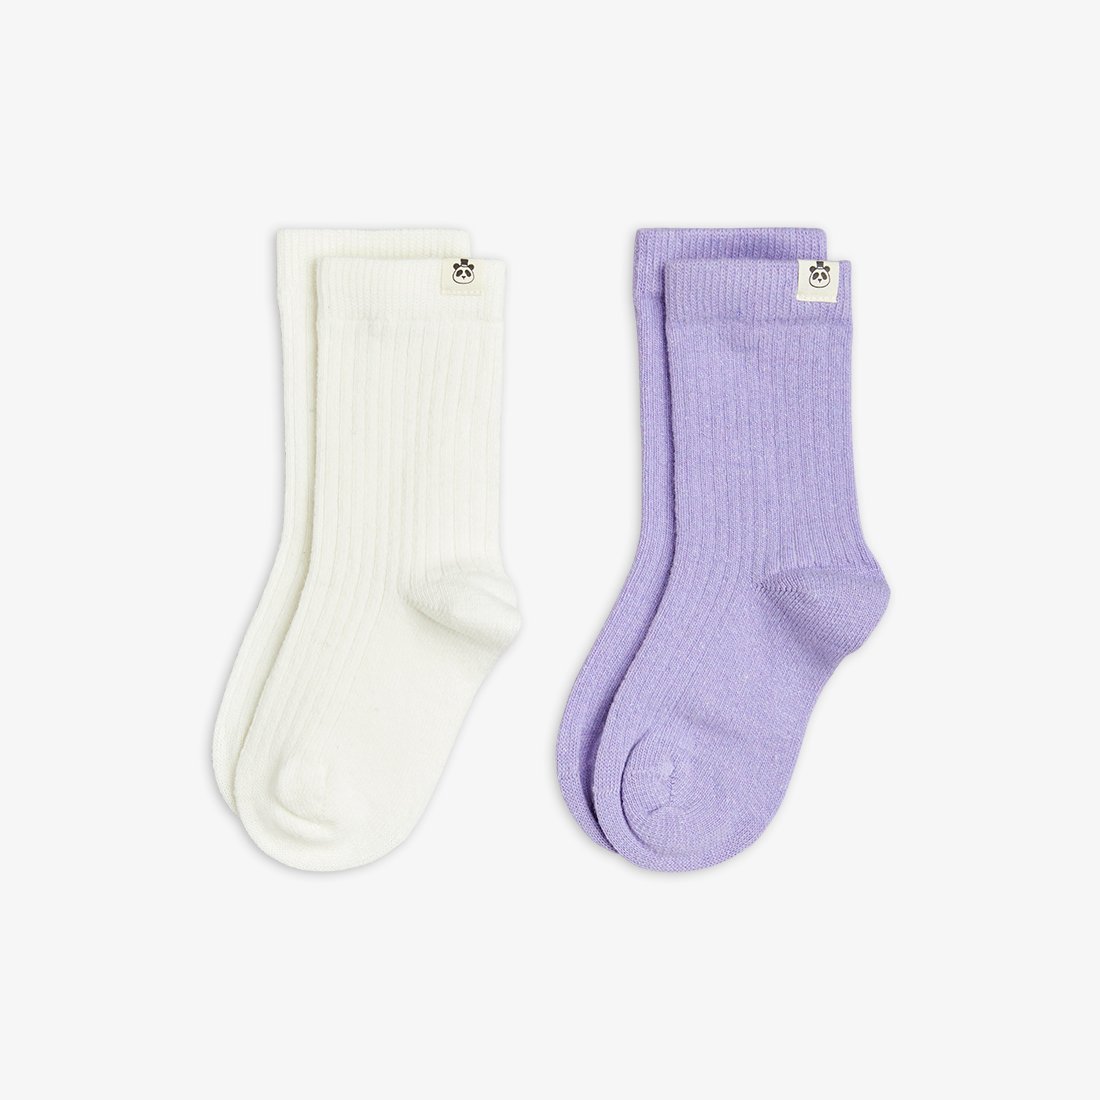 Wool socks 2-pack - Multi